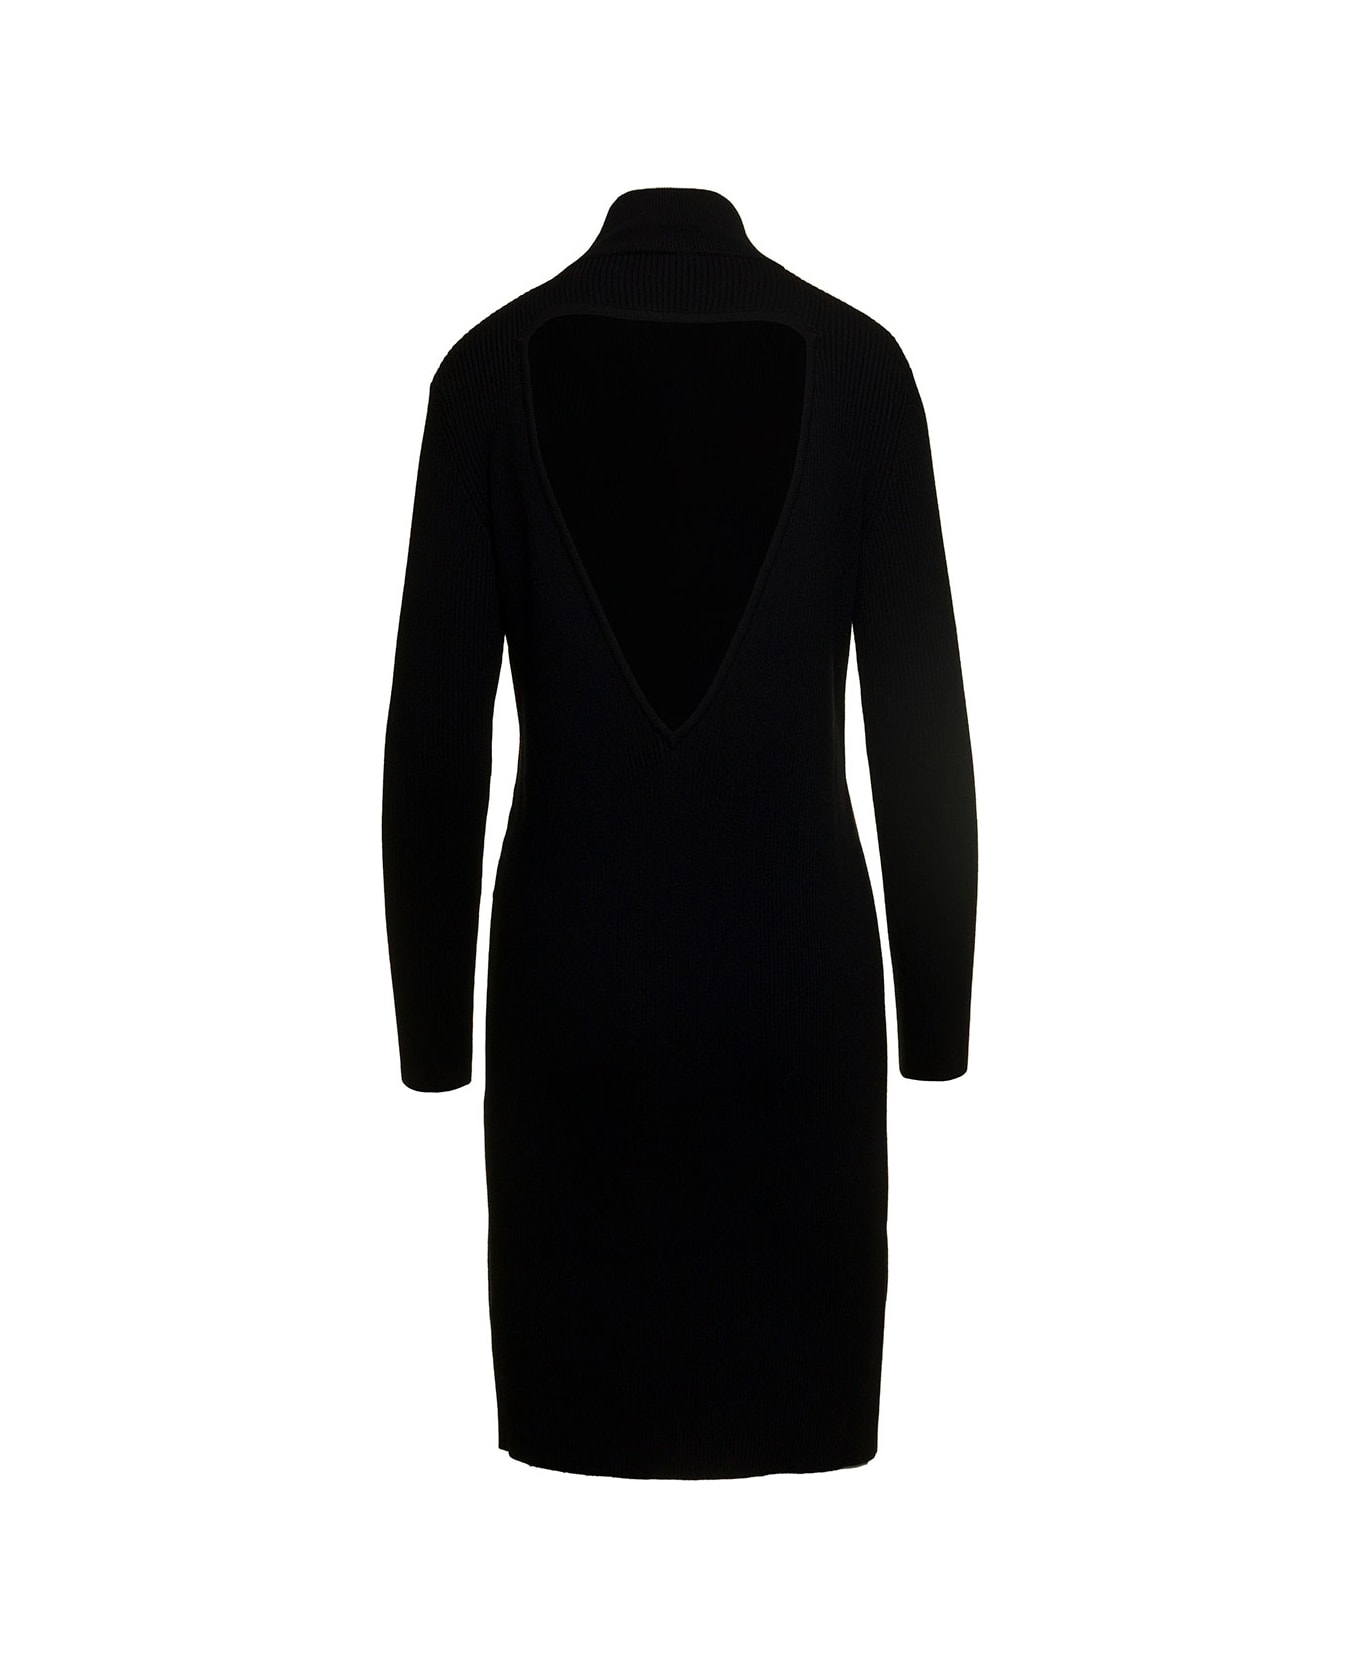 Bottega Veneta Mini Knit Dress Long Sleeves Tringle Back Cutout - Black